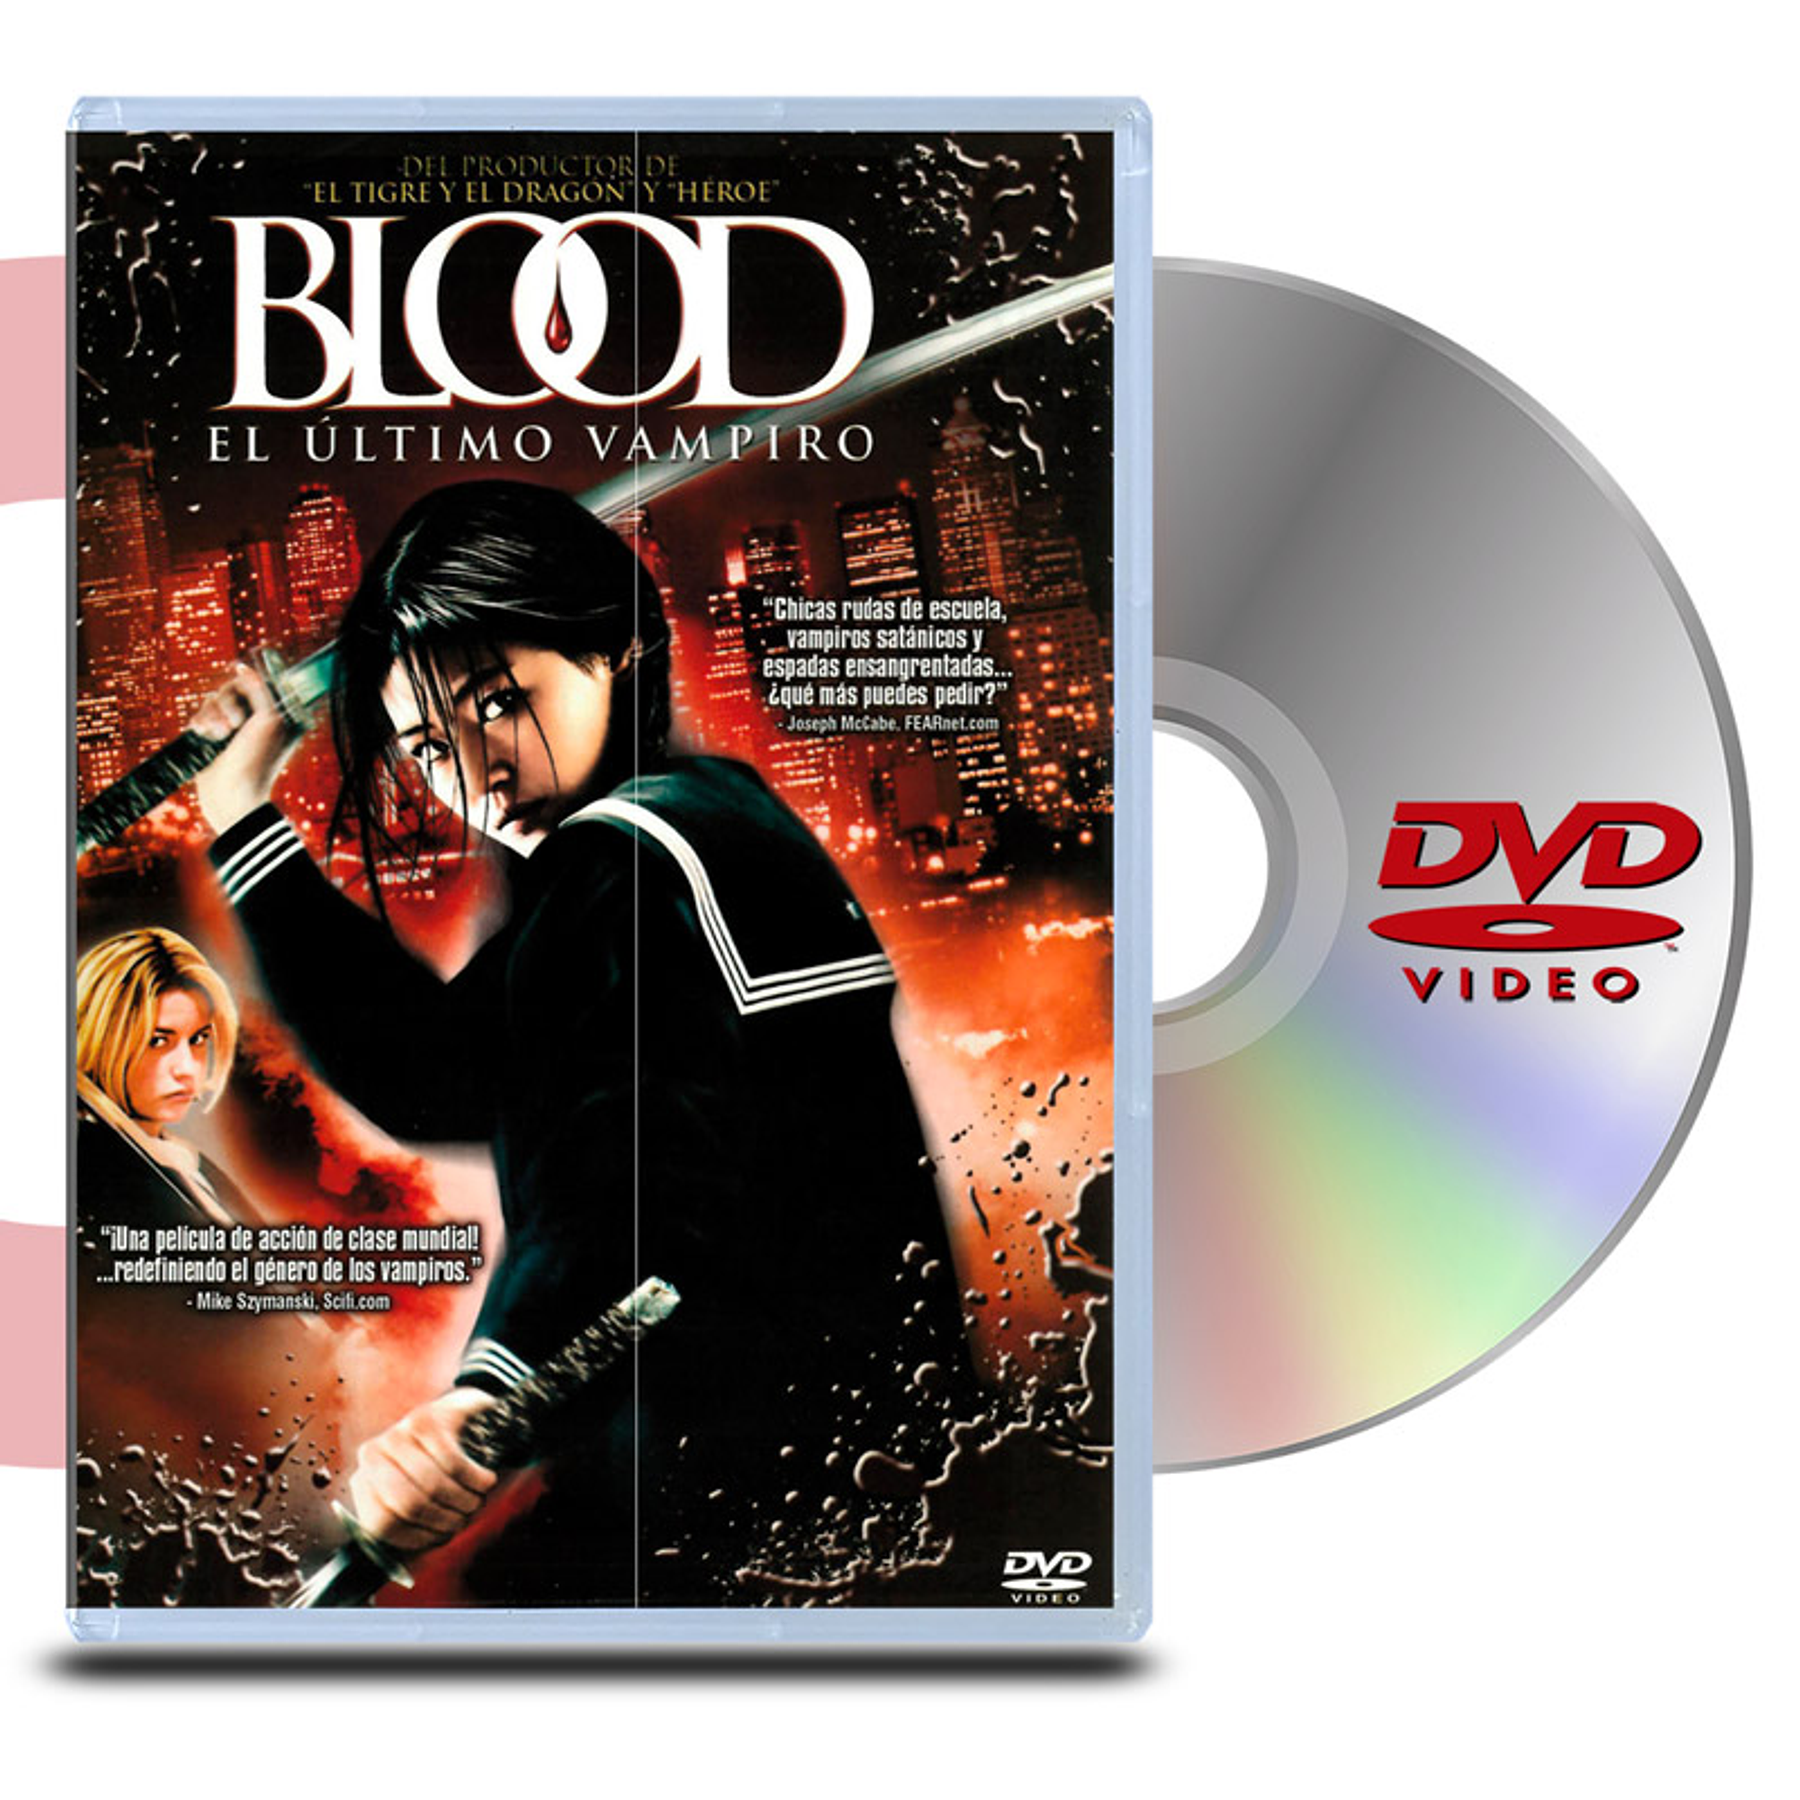 DVD Blood: El Ultimo Vampiro